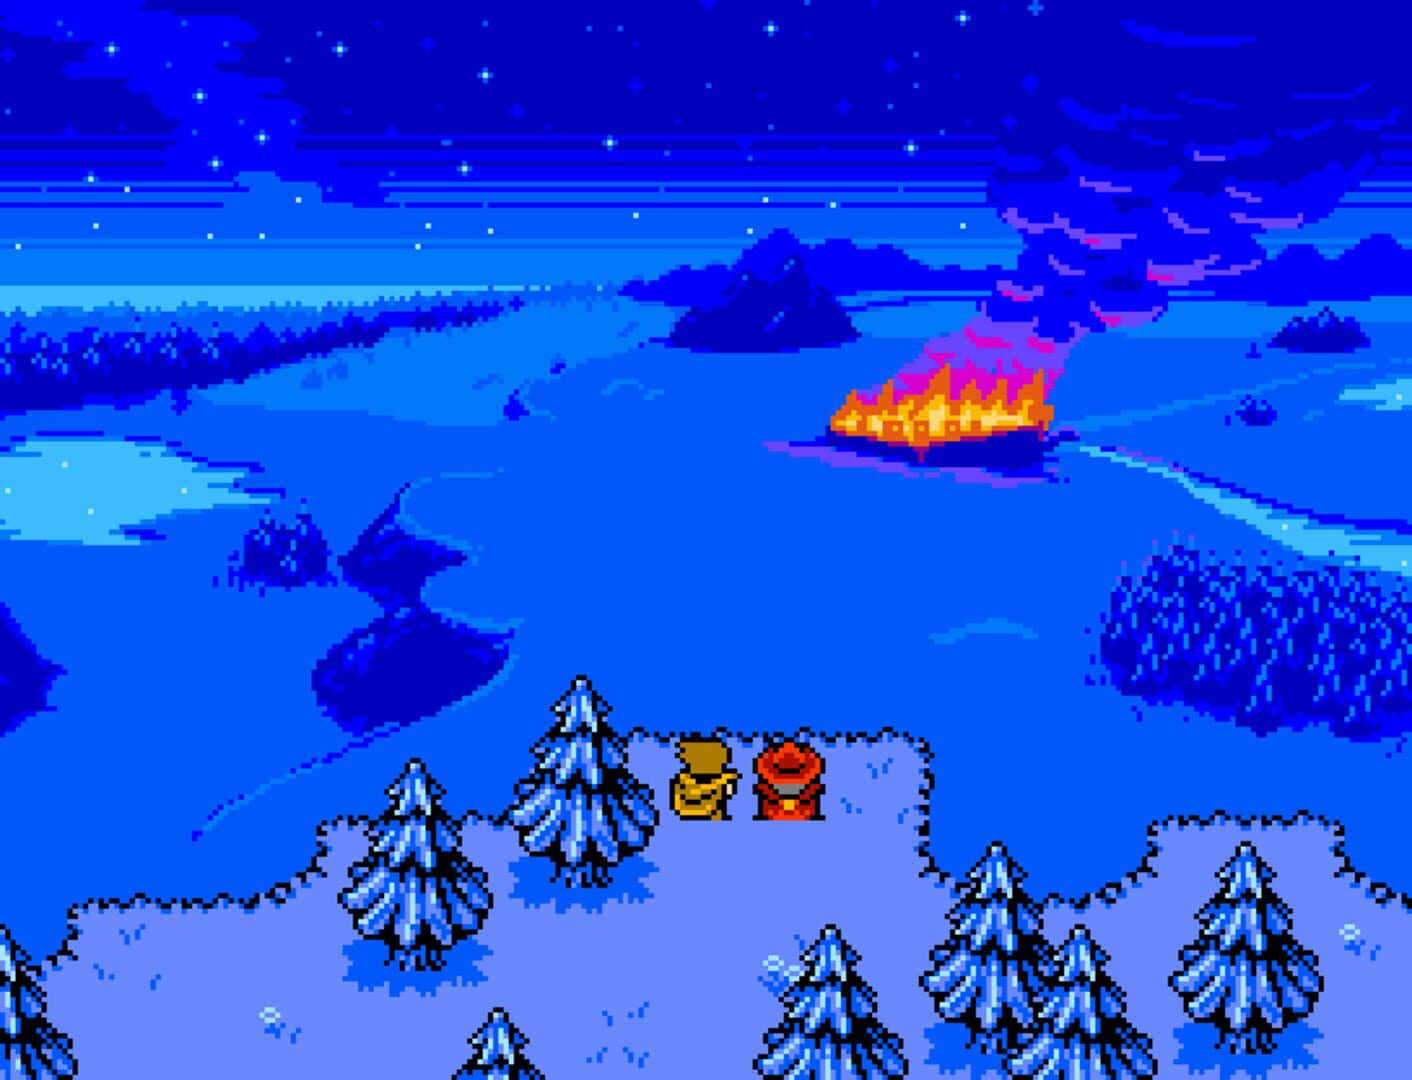 8-Bit Adventures 2 screenshot